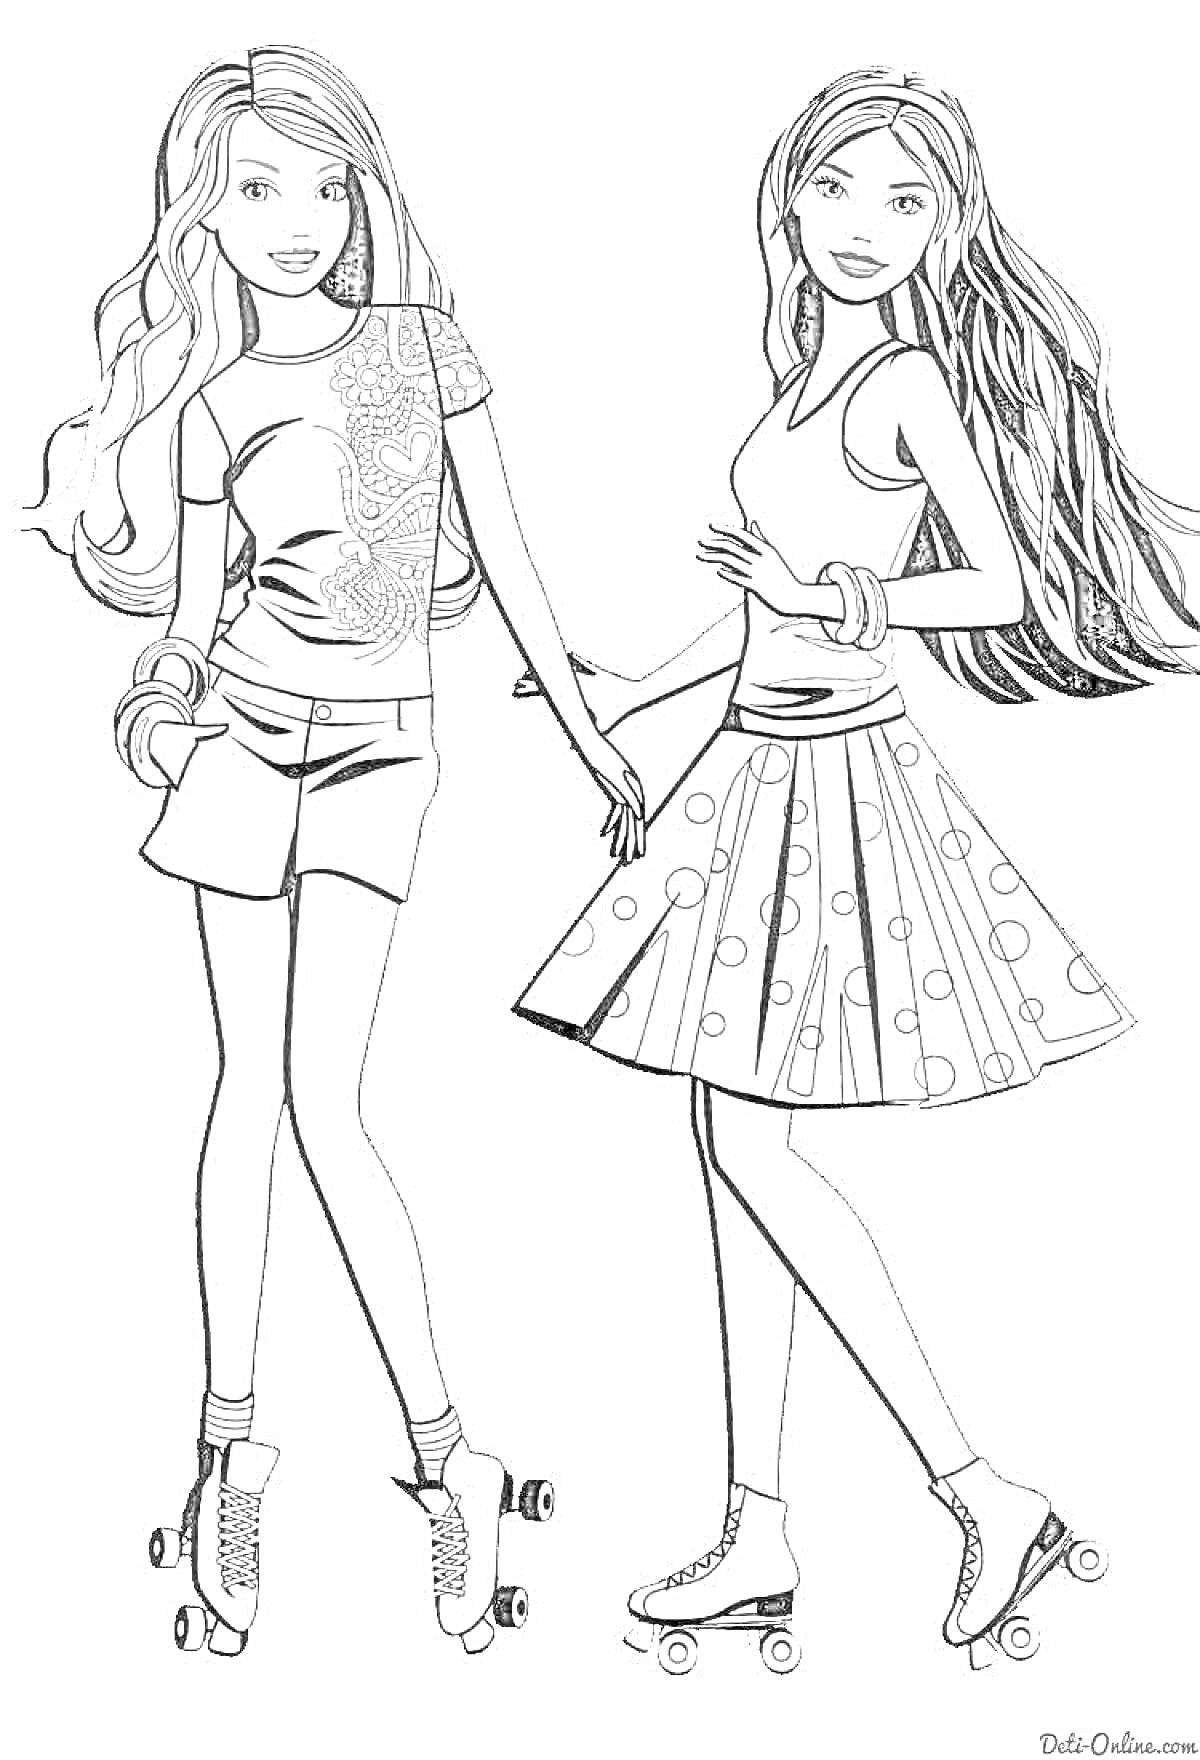 Раскраска Две куклы Барби на роликах, одна в шортах с цветочным топом, другая в юбке с горошинами и футболке с браслетами